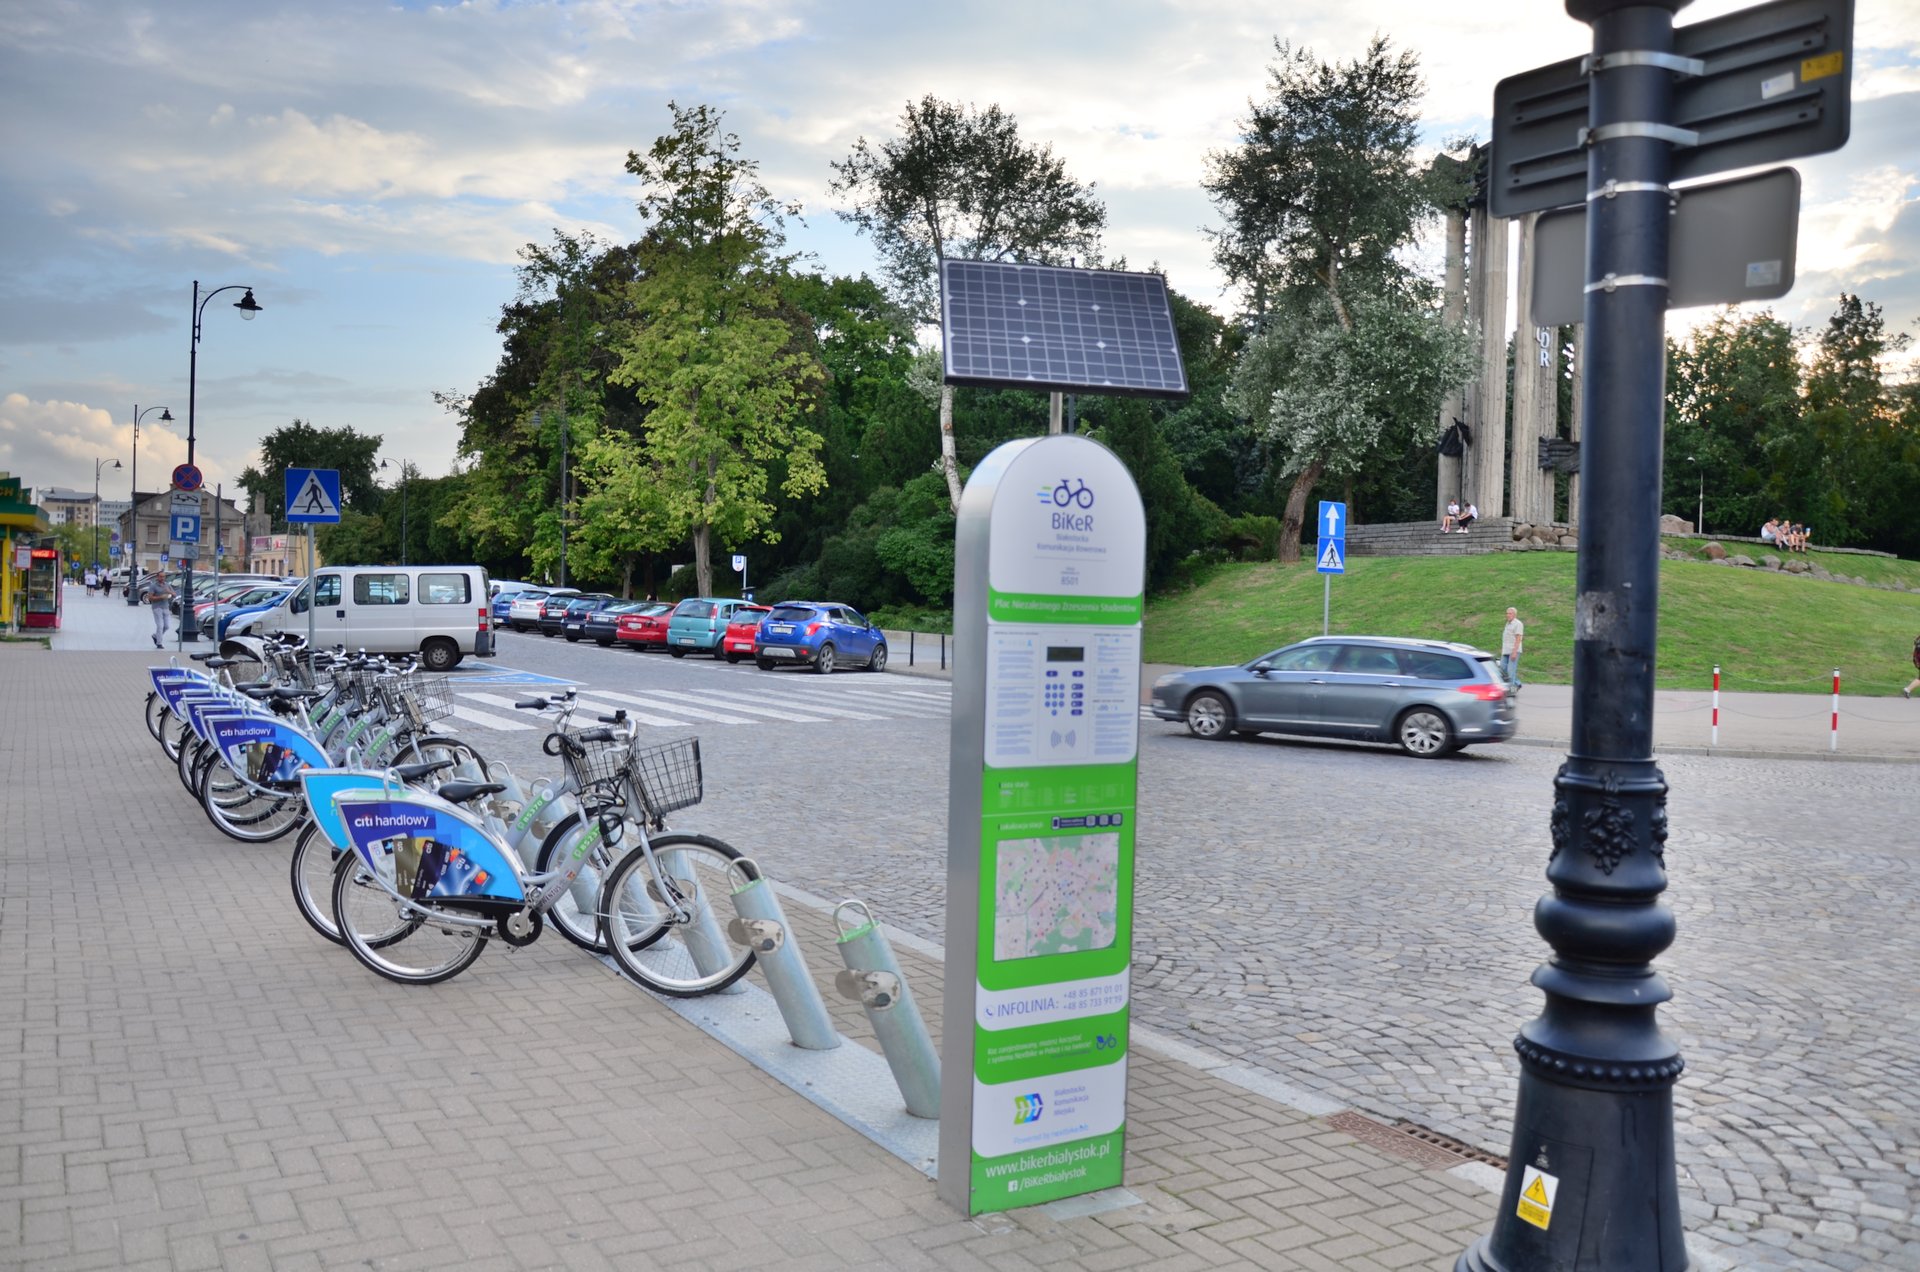 Białystok Biker stacja rower roweryfree photo darmowe zdjęcie